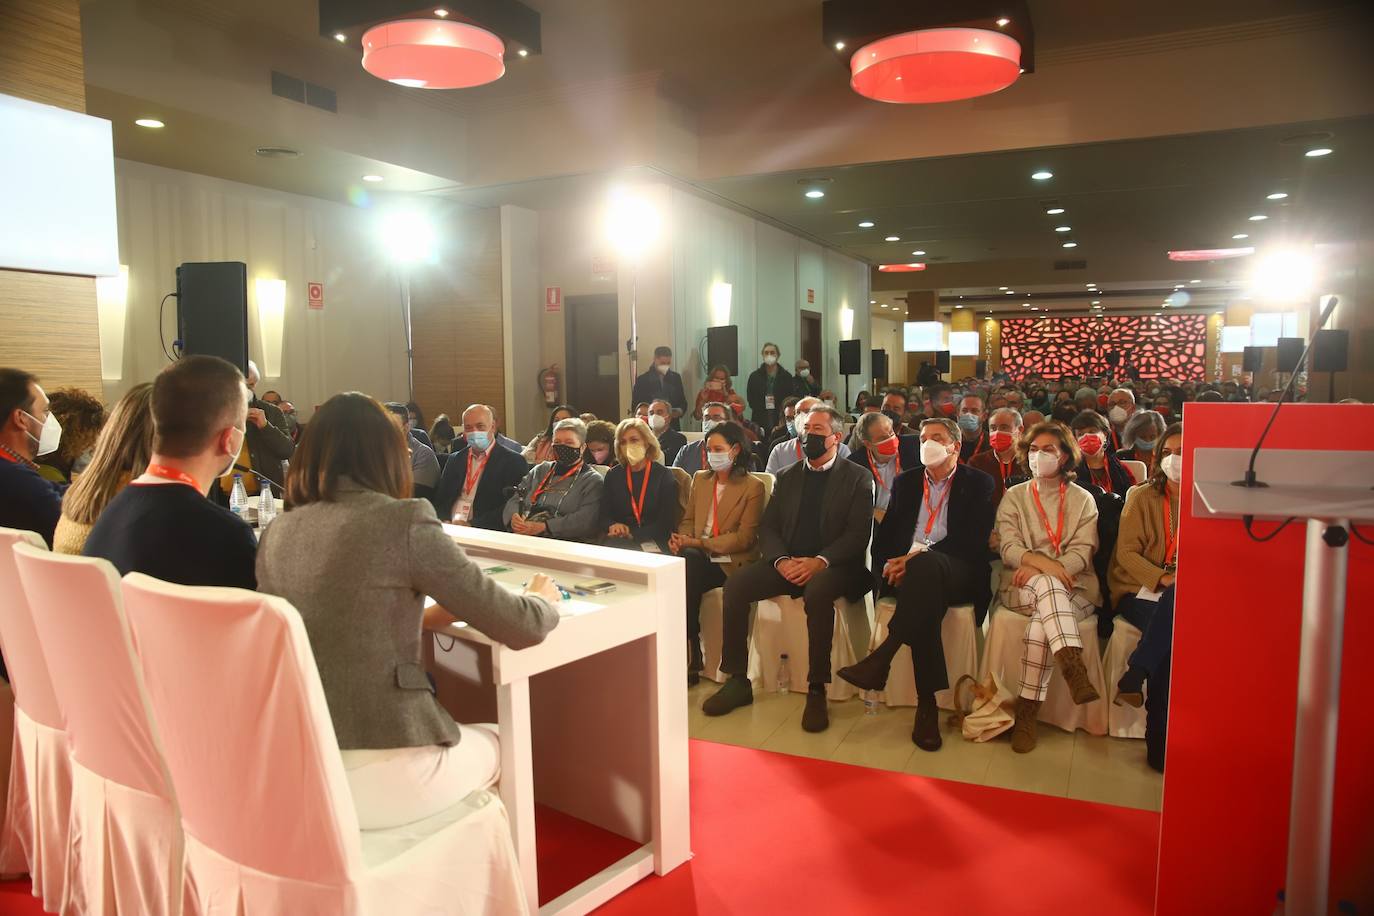 El congreso provincial del PSOE de Córdoba, en imágenes